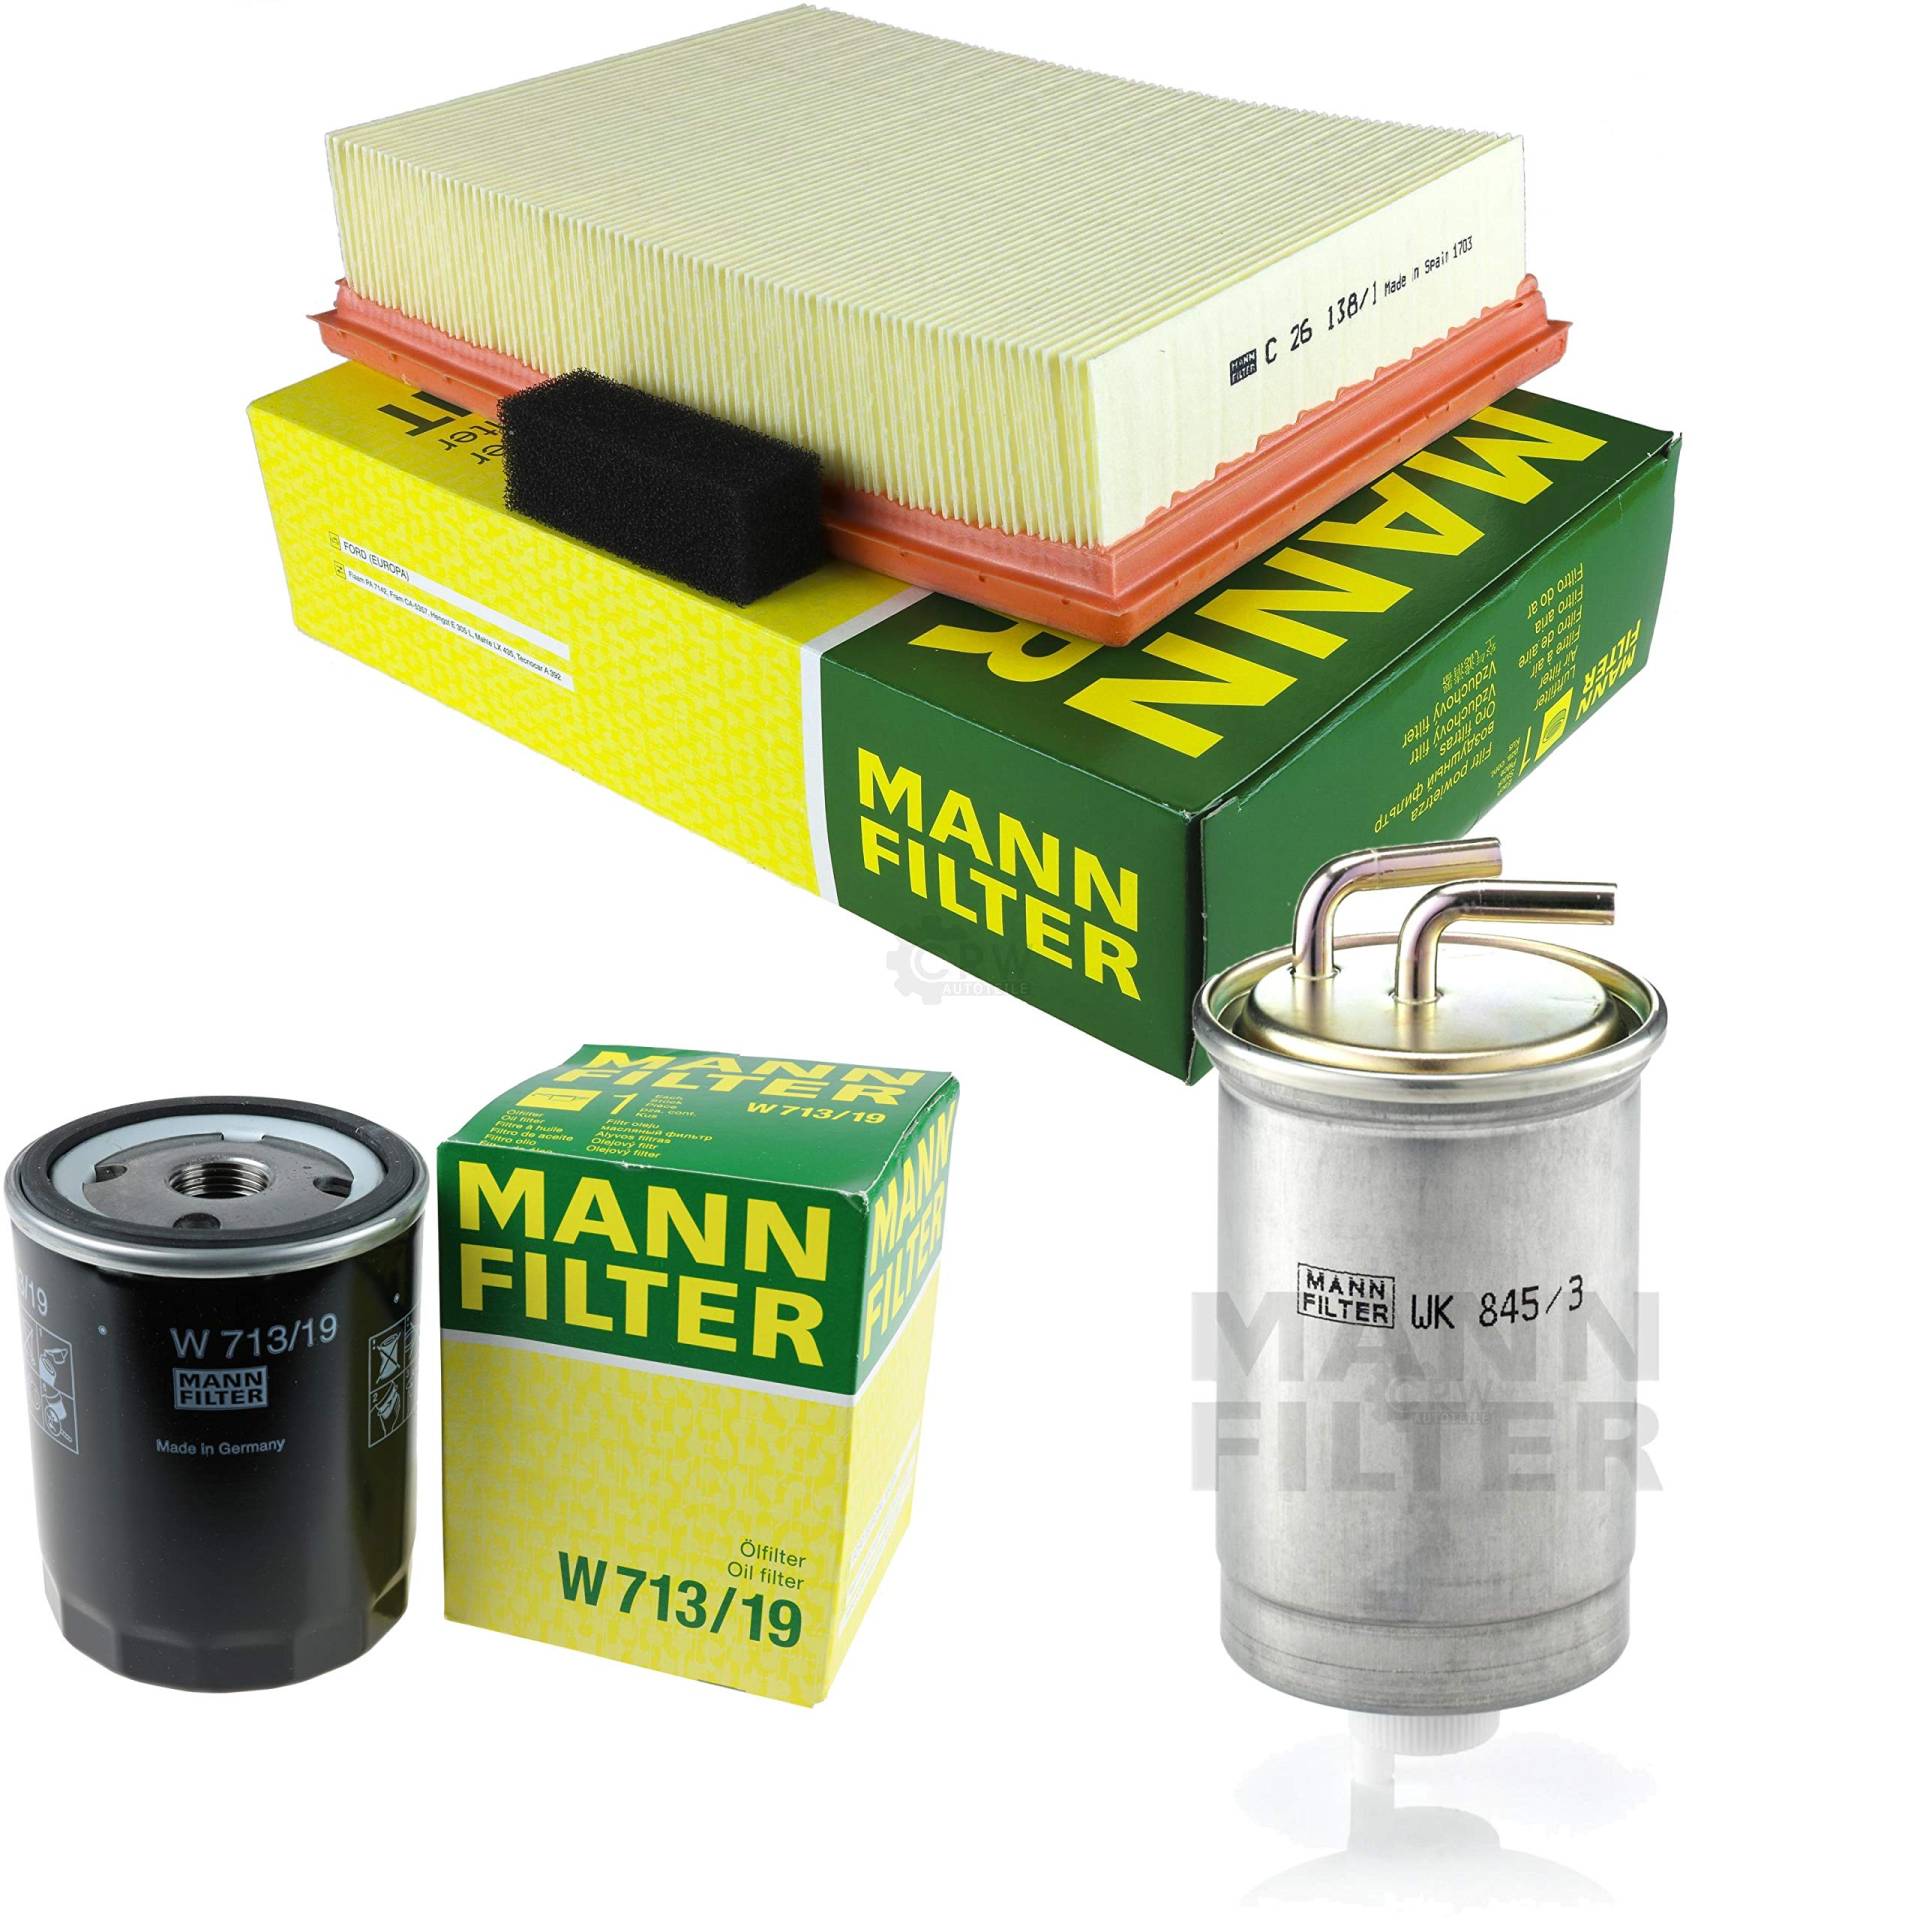 MANN-FILTER Inspektions Set Inspektionspaket Kraftstofffilter Luftfilter Ölfilter von Diederichs